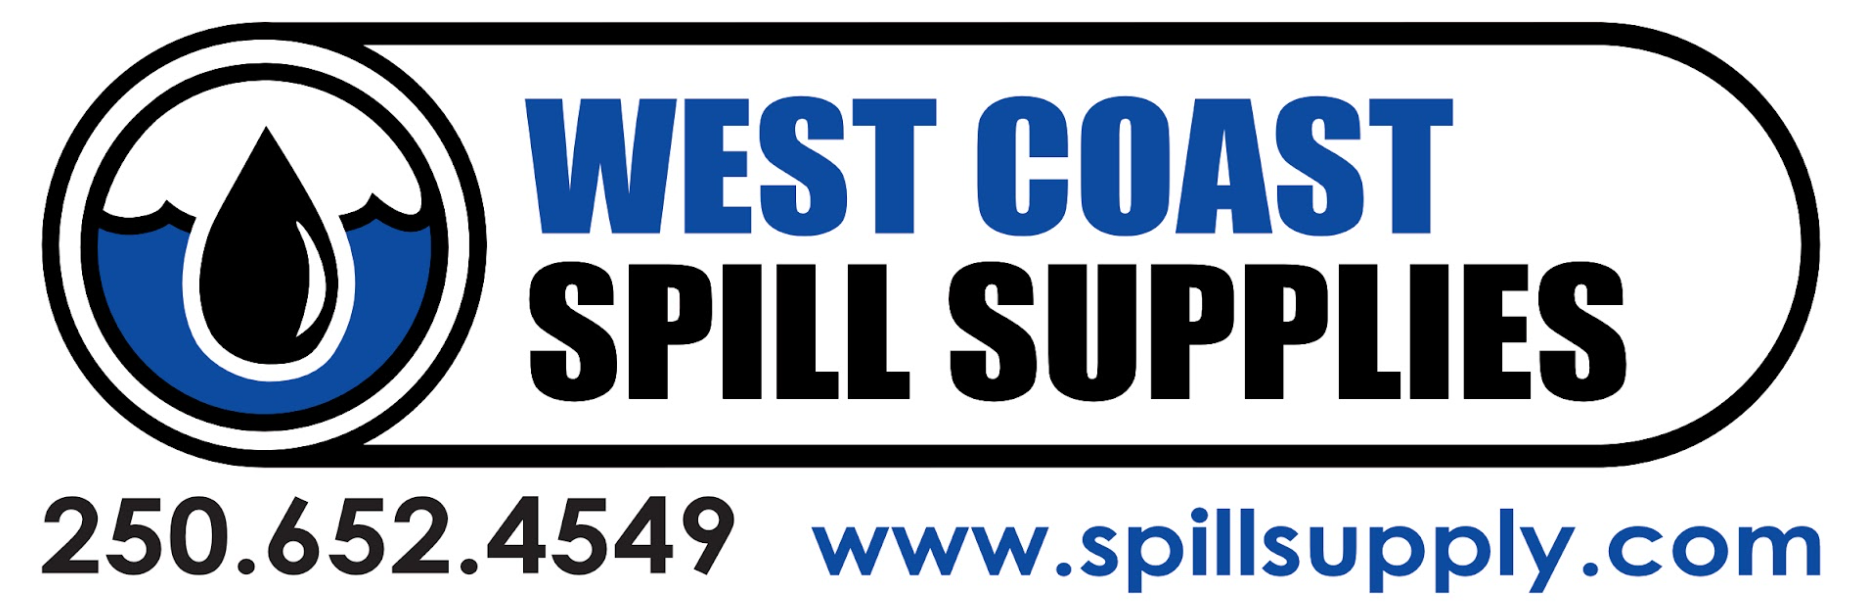 West Coast Spill Supllies